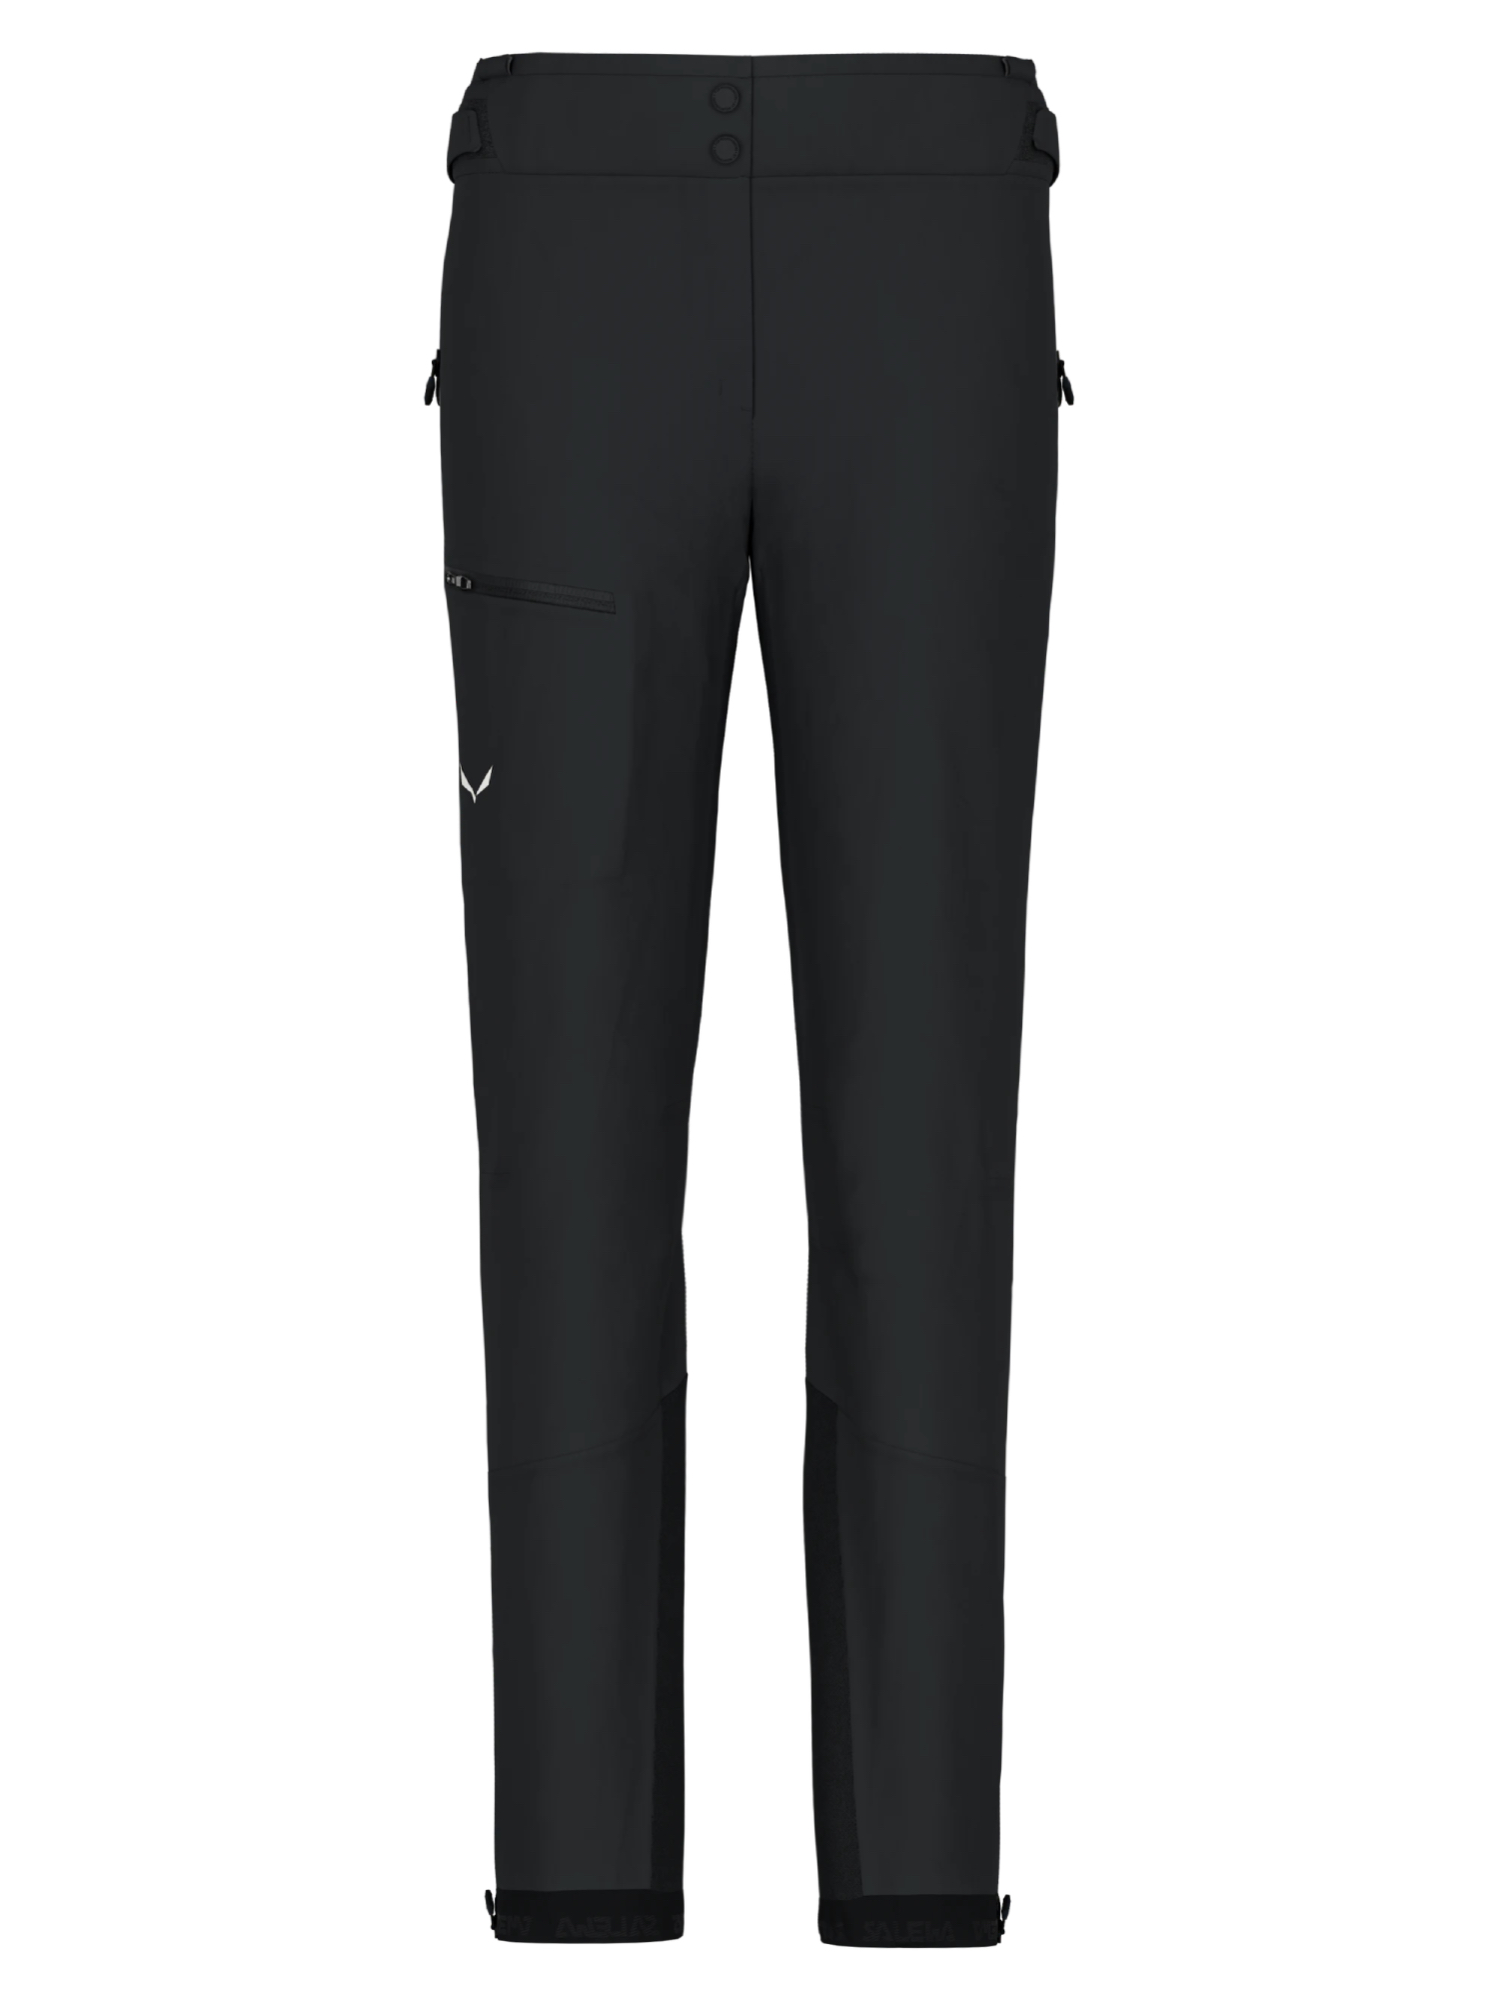 Спортивные брюки женские Salewa Ortles Ptx 3L W Pants черные 38